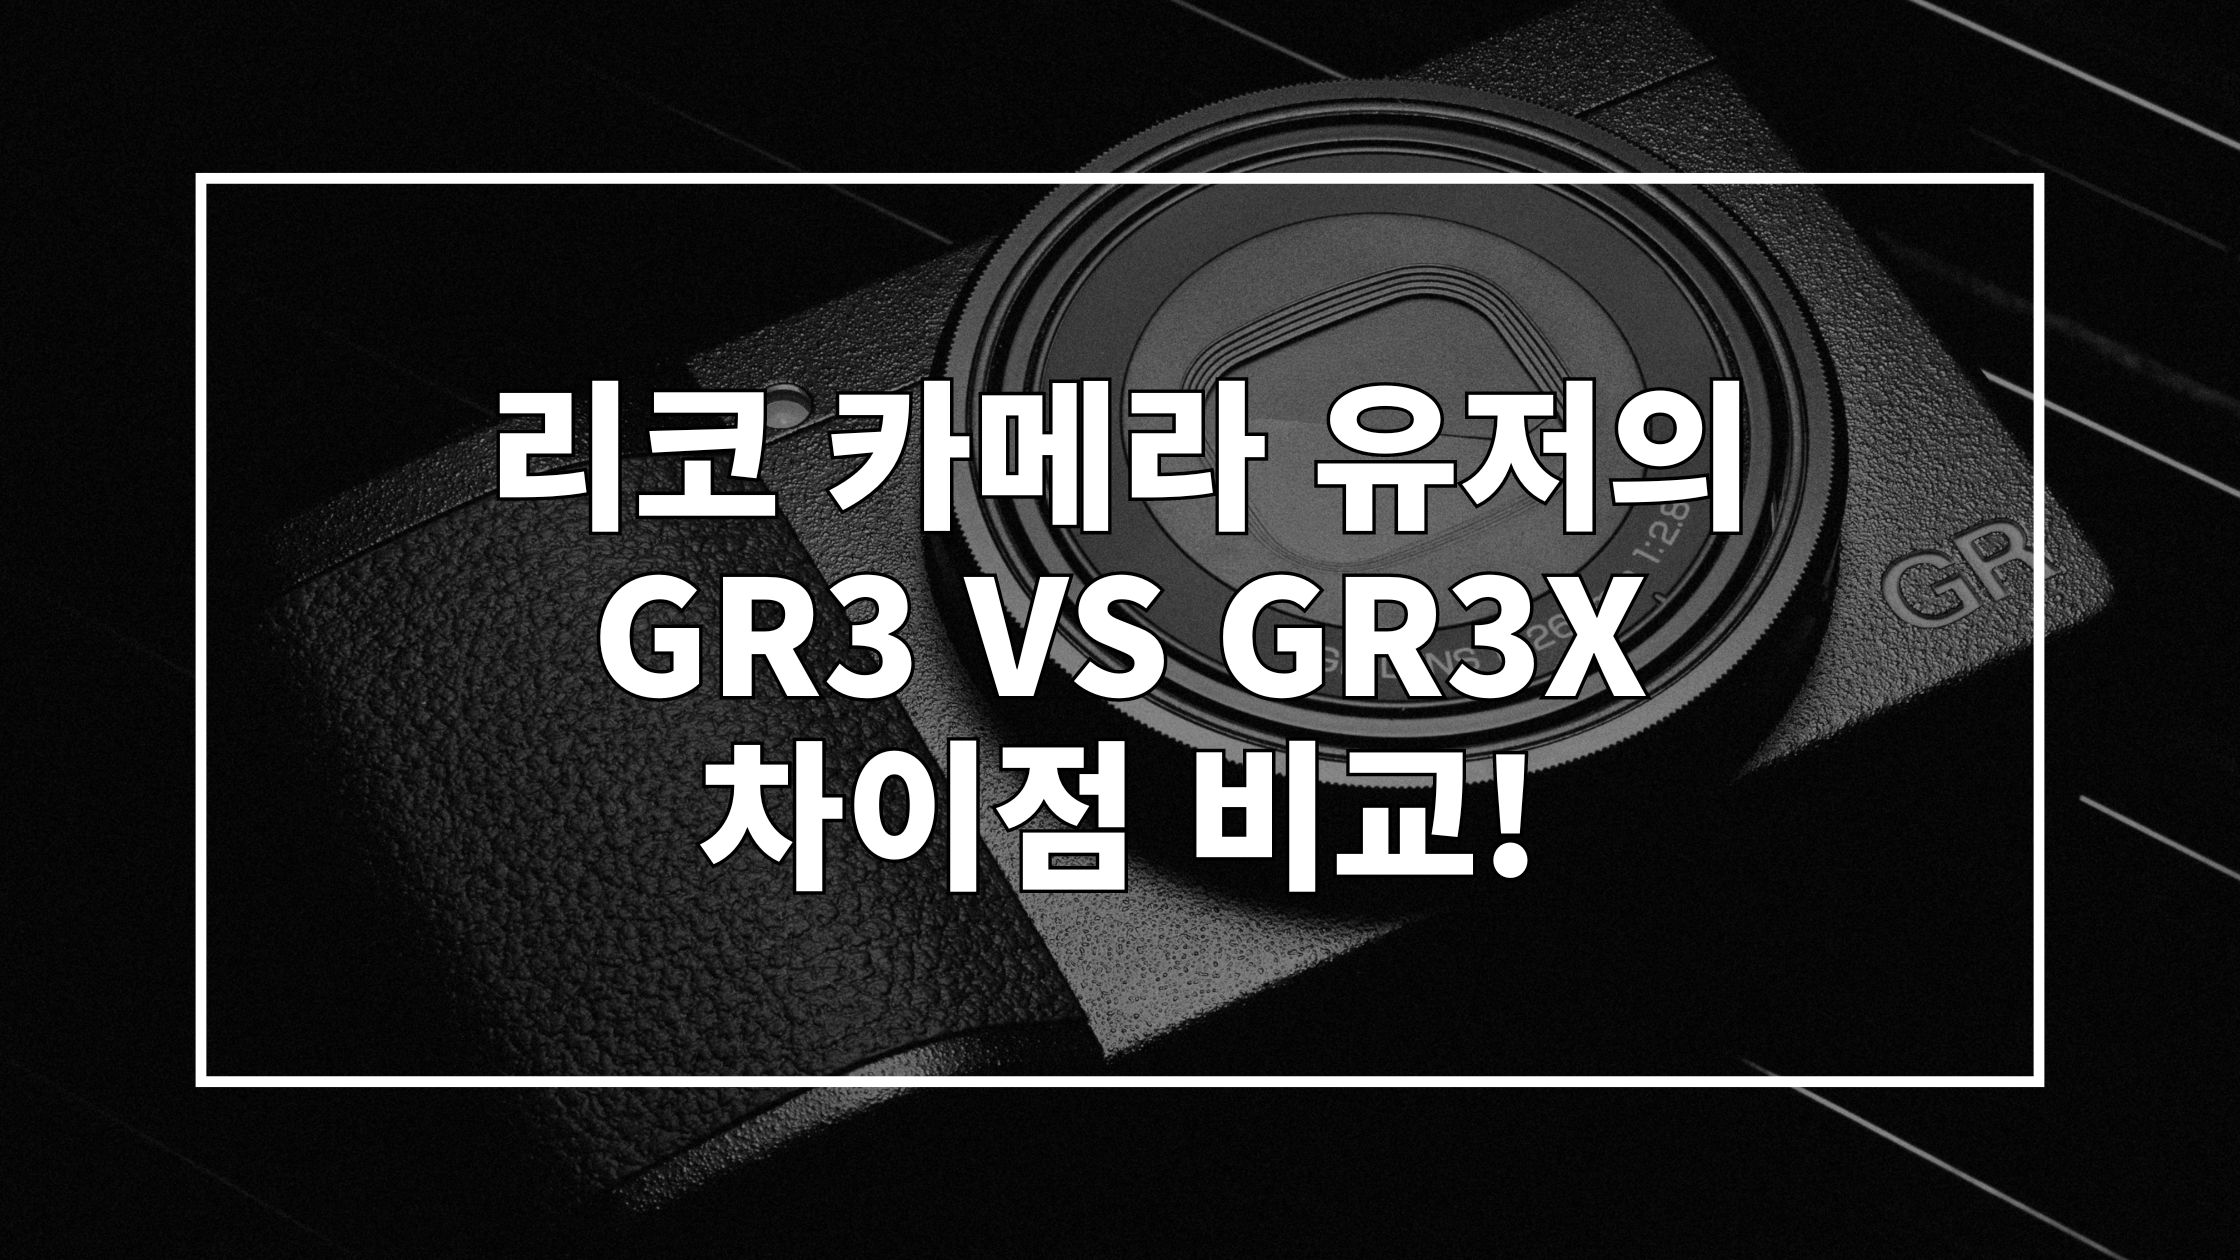 리코 카메라가 검은색 바탕화면 위에 놓여진 사진 위에 '리코 카메라 유저의 GR3 VS GR3X 차이점 비교!'라고 쓰인 썸네일 이미지입니다.